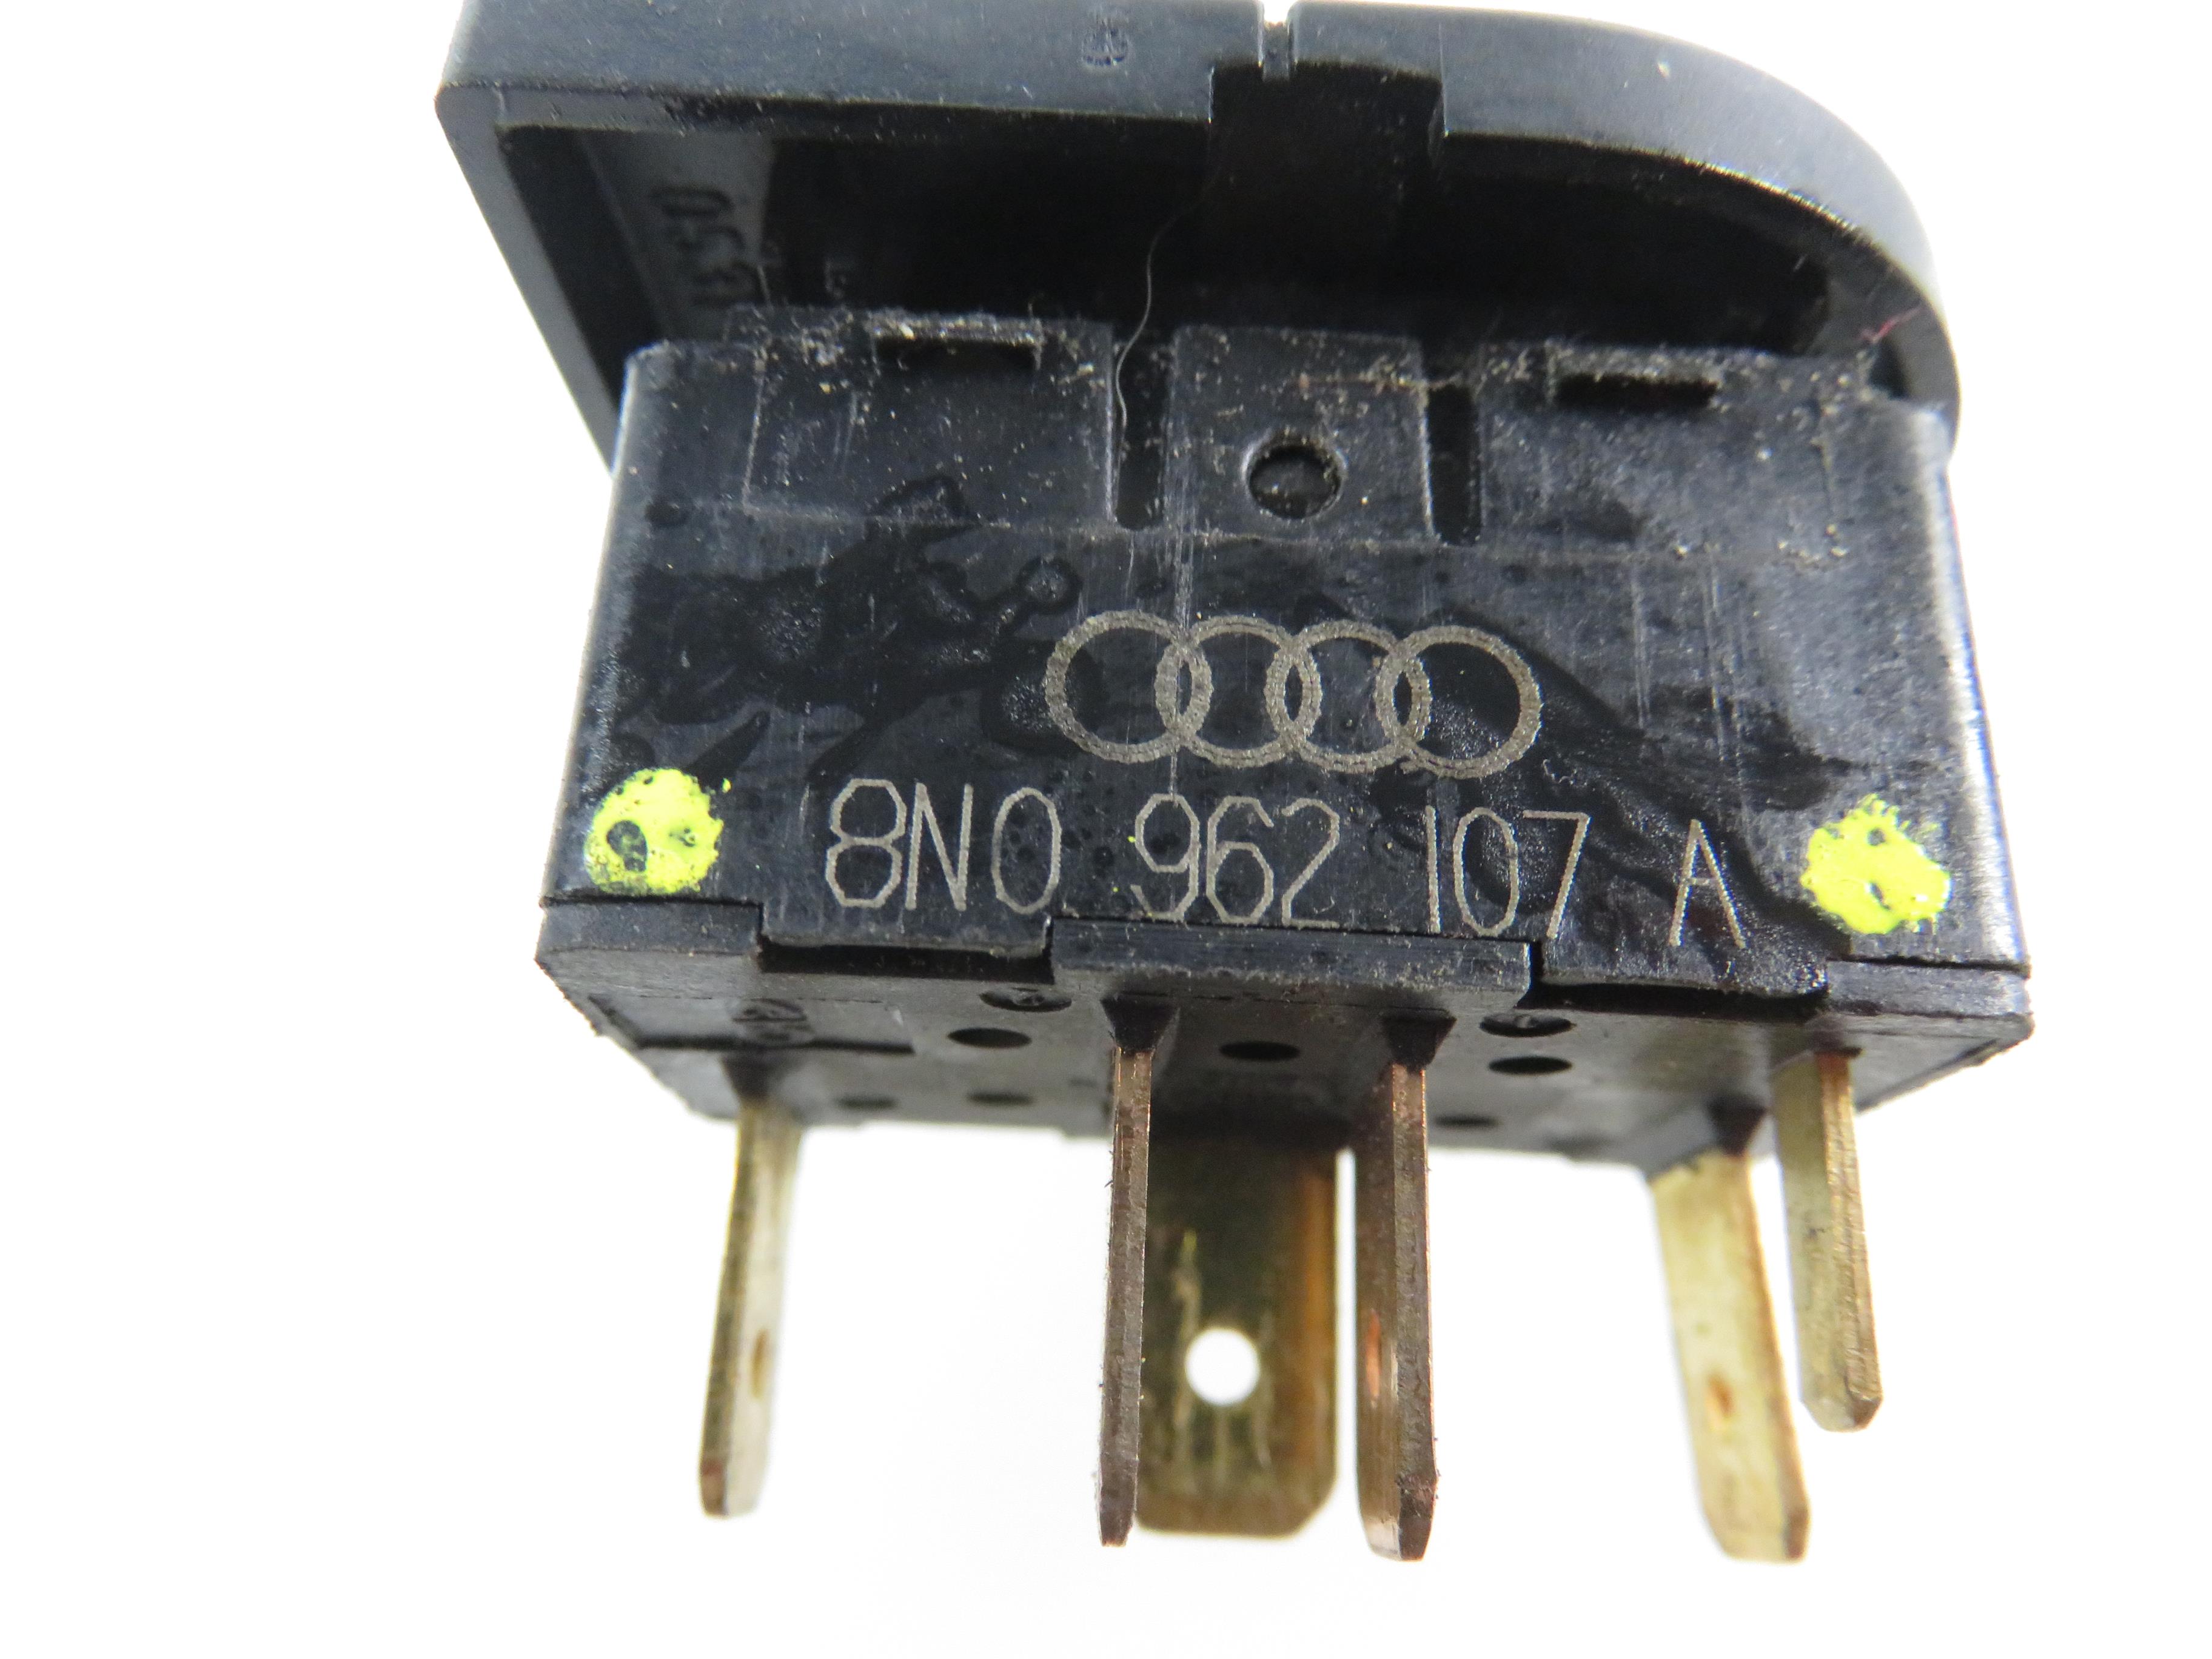 AUDI TT 8N (1998-2006) Central locking switch 8N0962107A 21837322